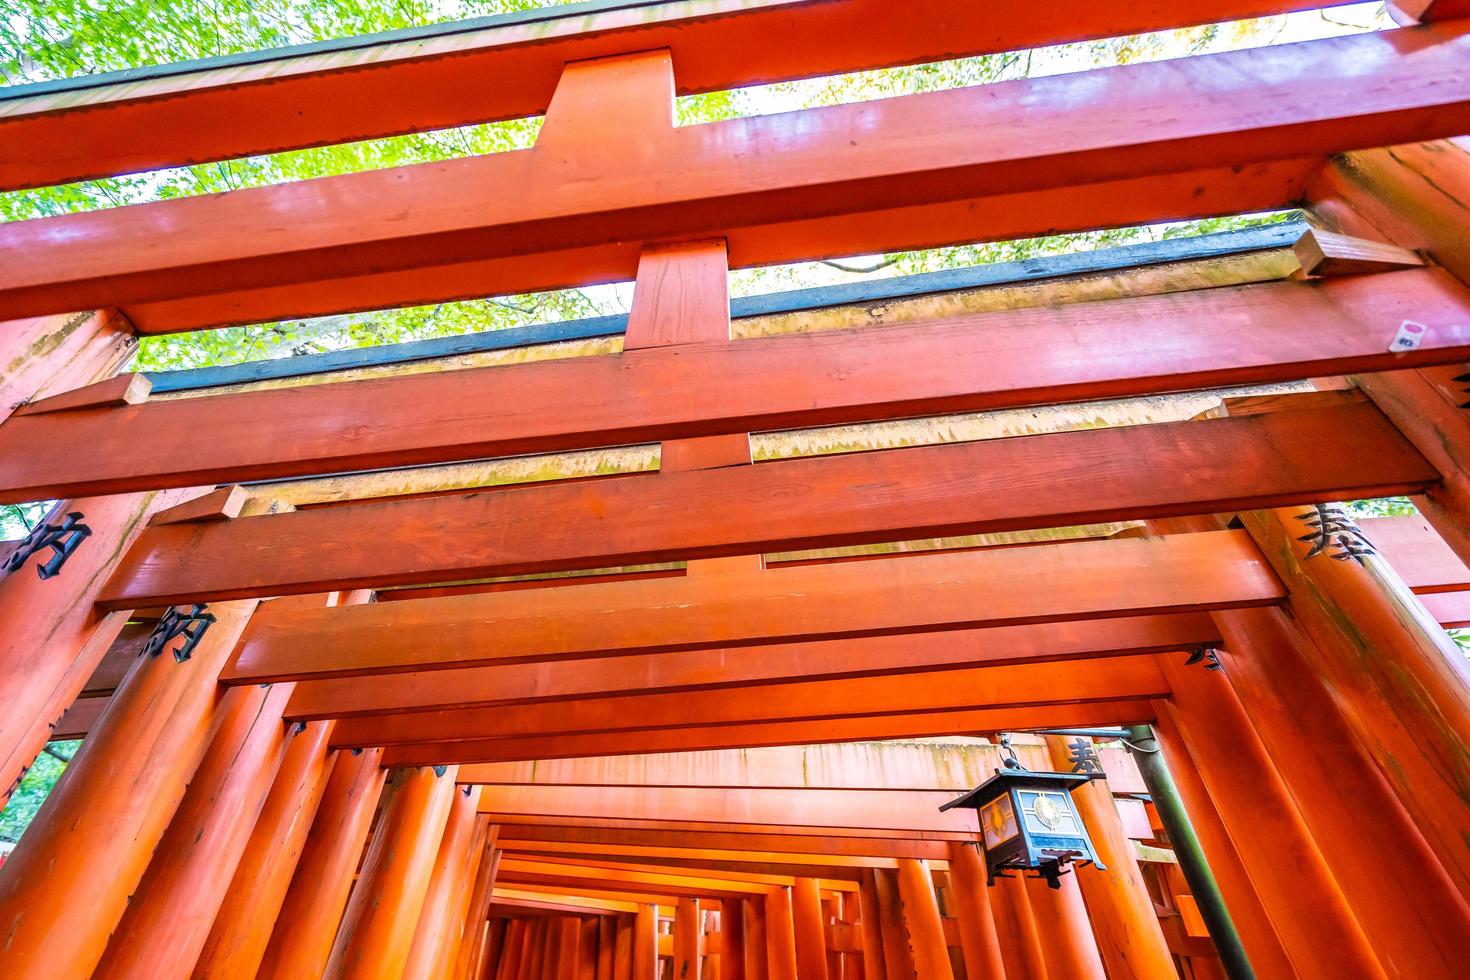 Portes torii au sanctuaire Fushimi Inari à Kyoto, Japon photo